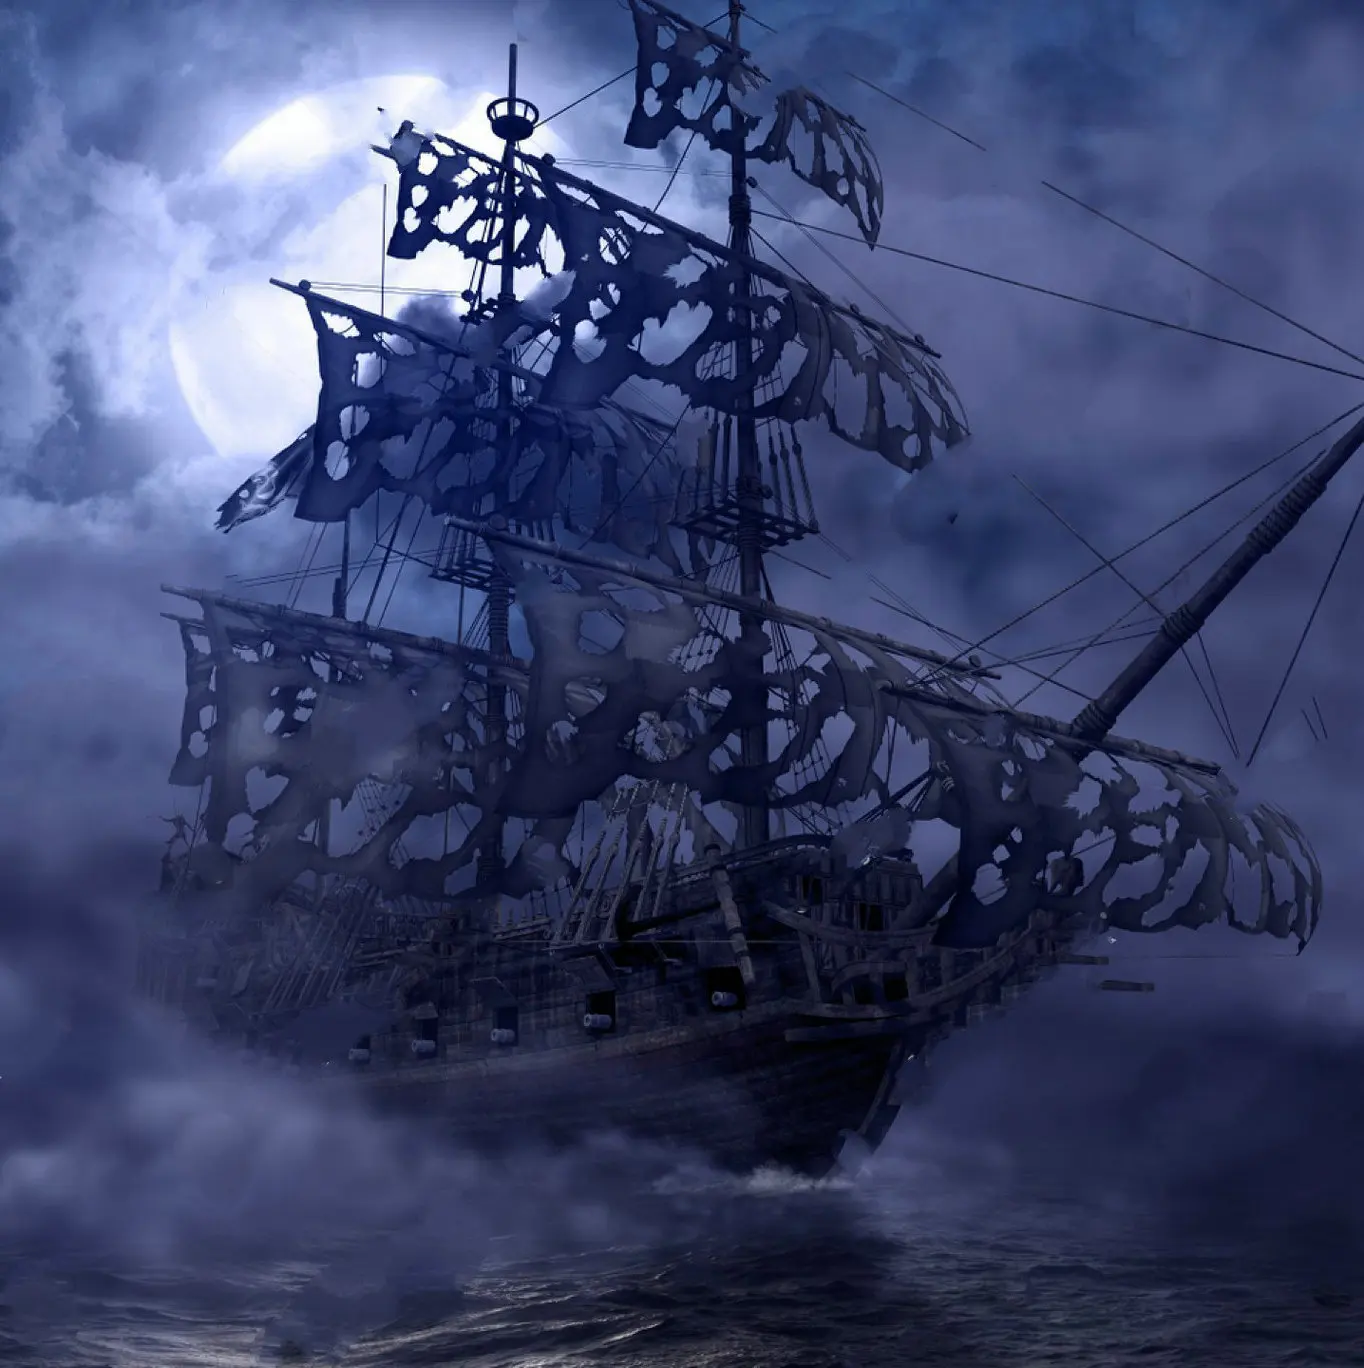 

Пиратский призрак корабль Лунная ночь полная луна фото фон Высокое качество компьютерная печать настенный фон